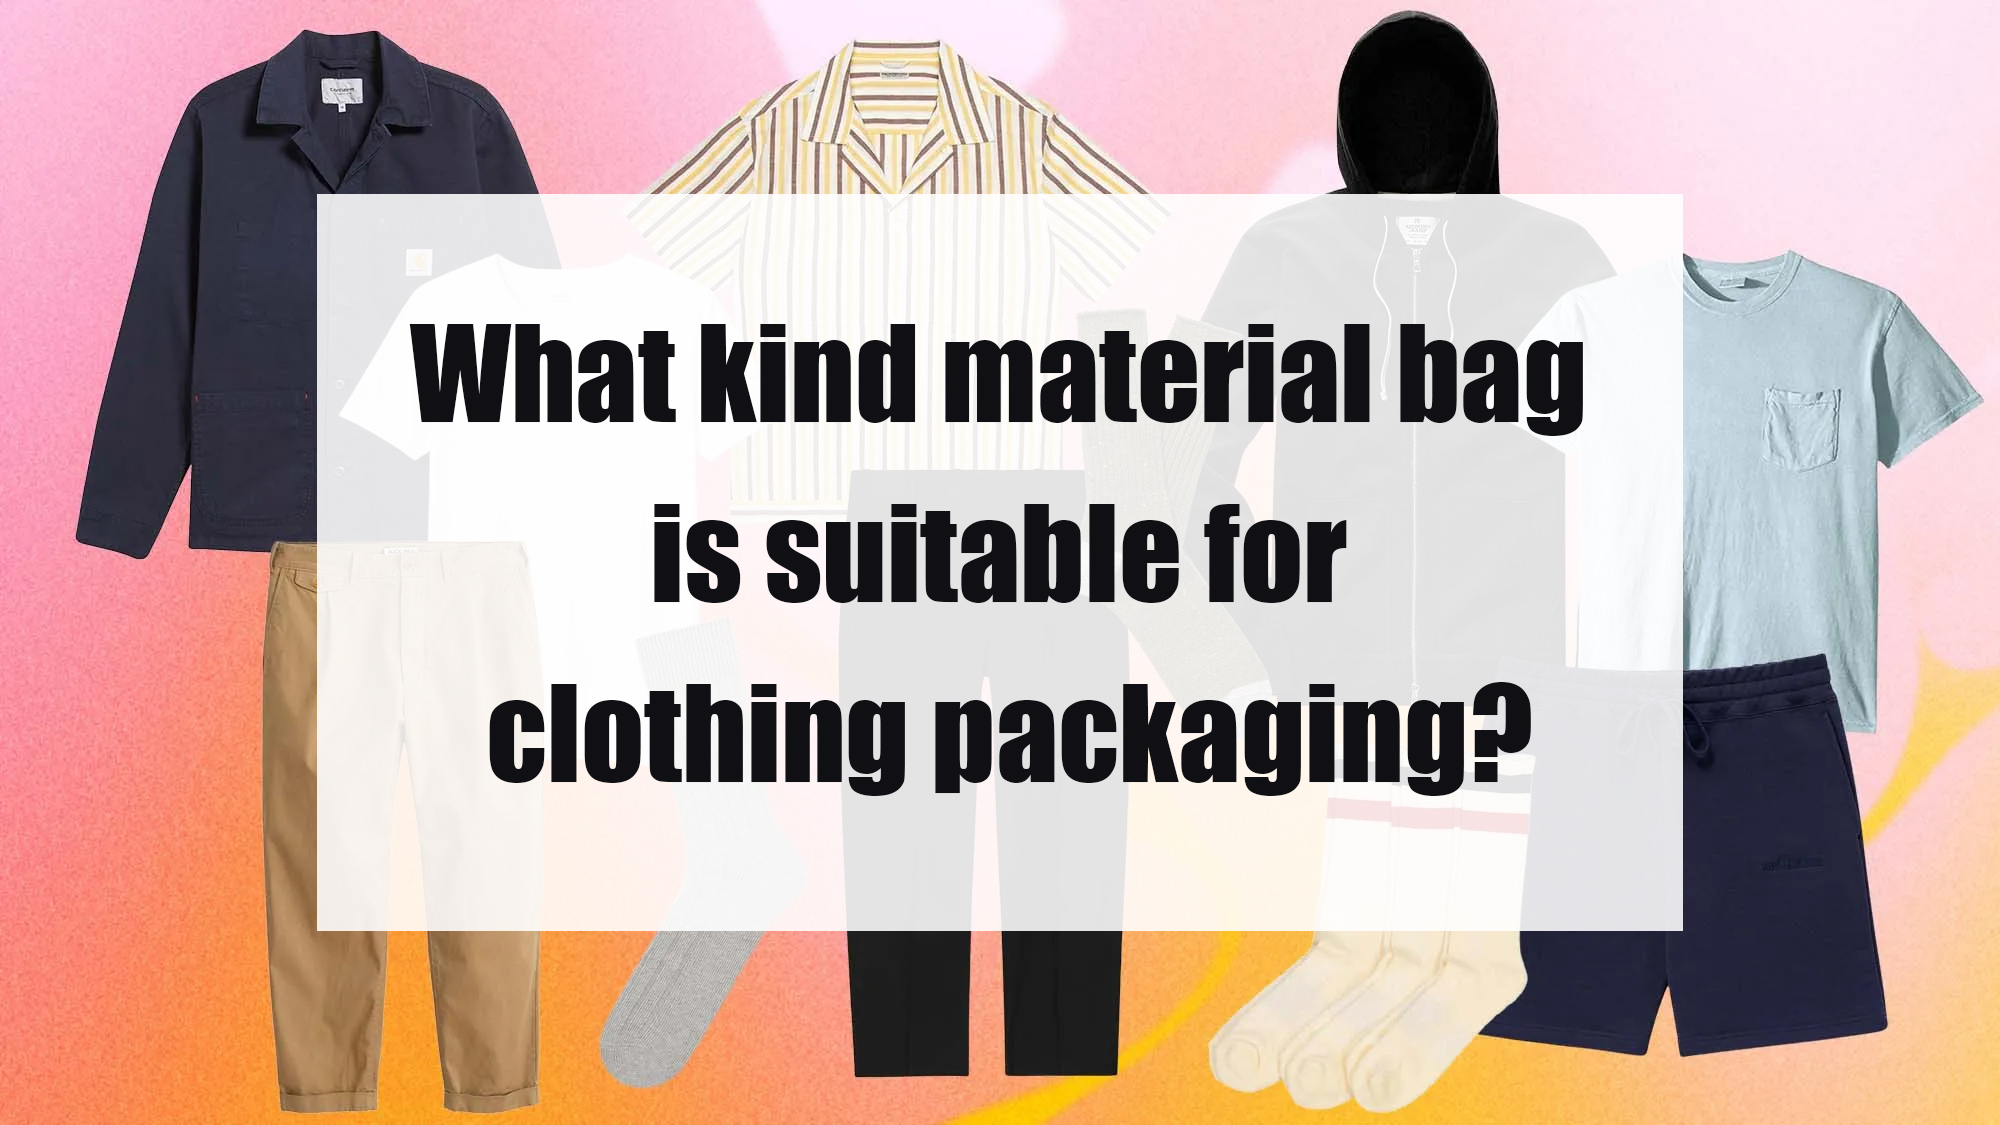 Apakah jenis beg bahan yang sesuai untuk pembungkusan pakaian?